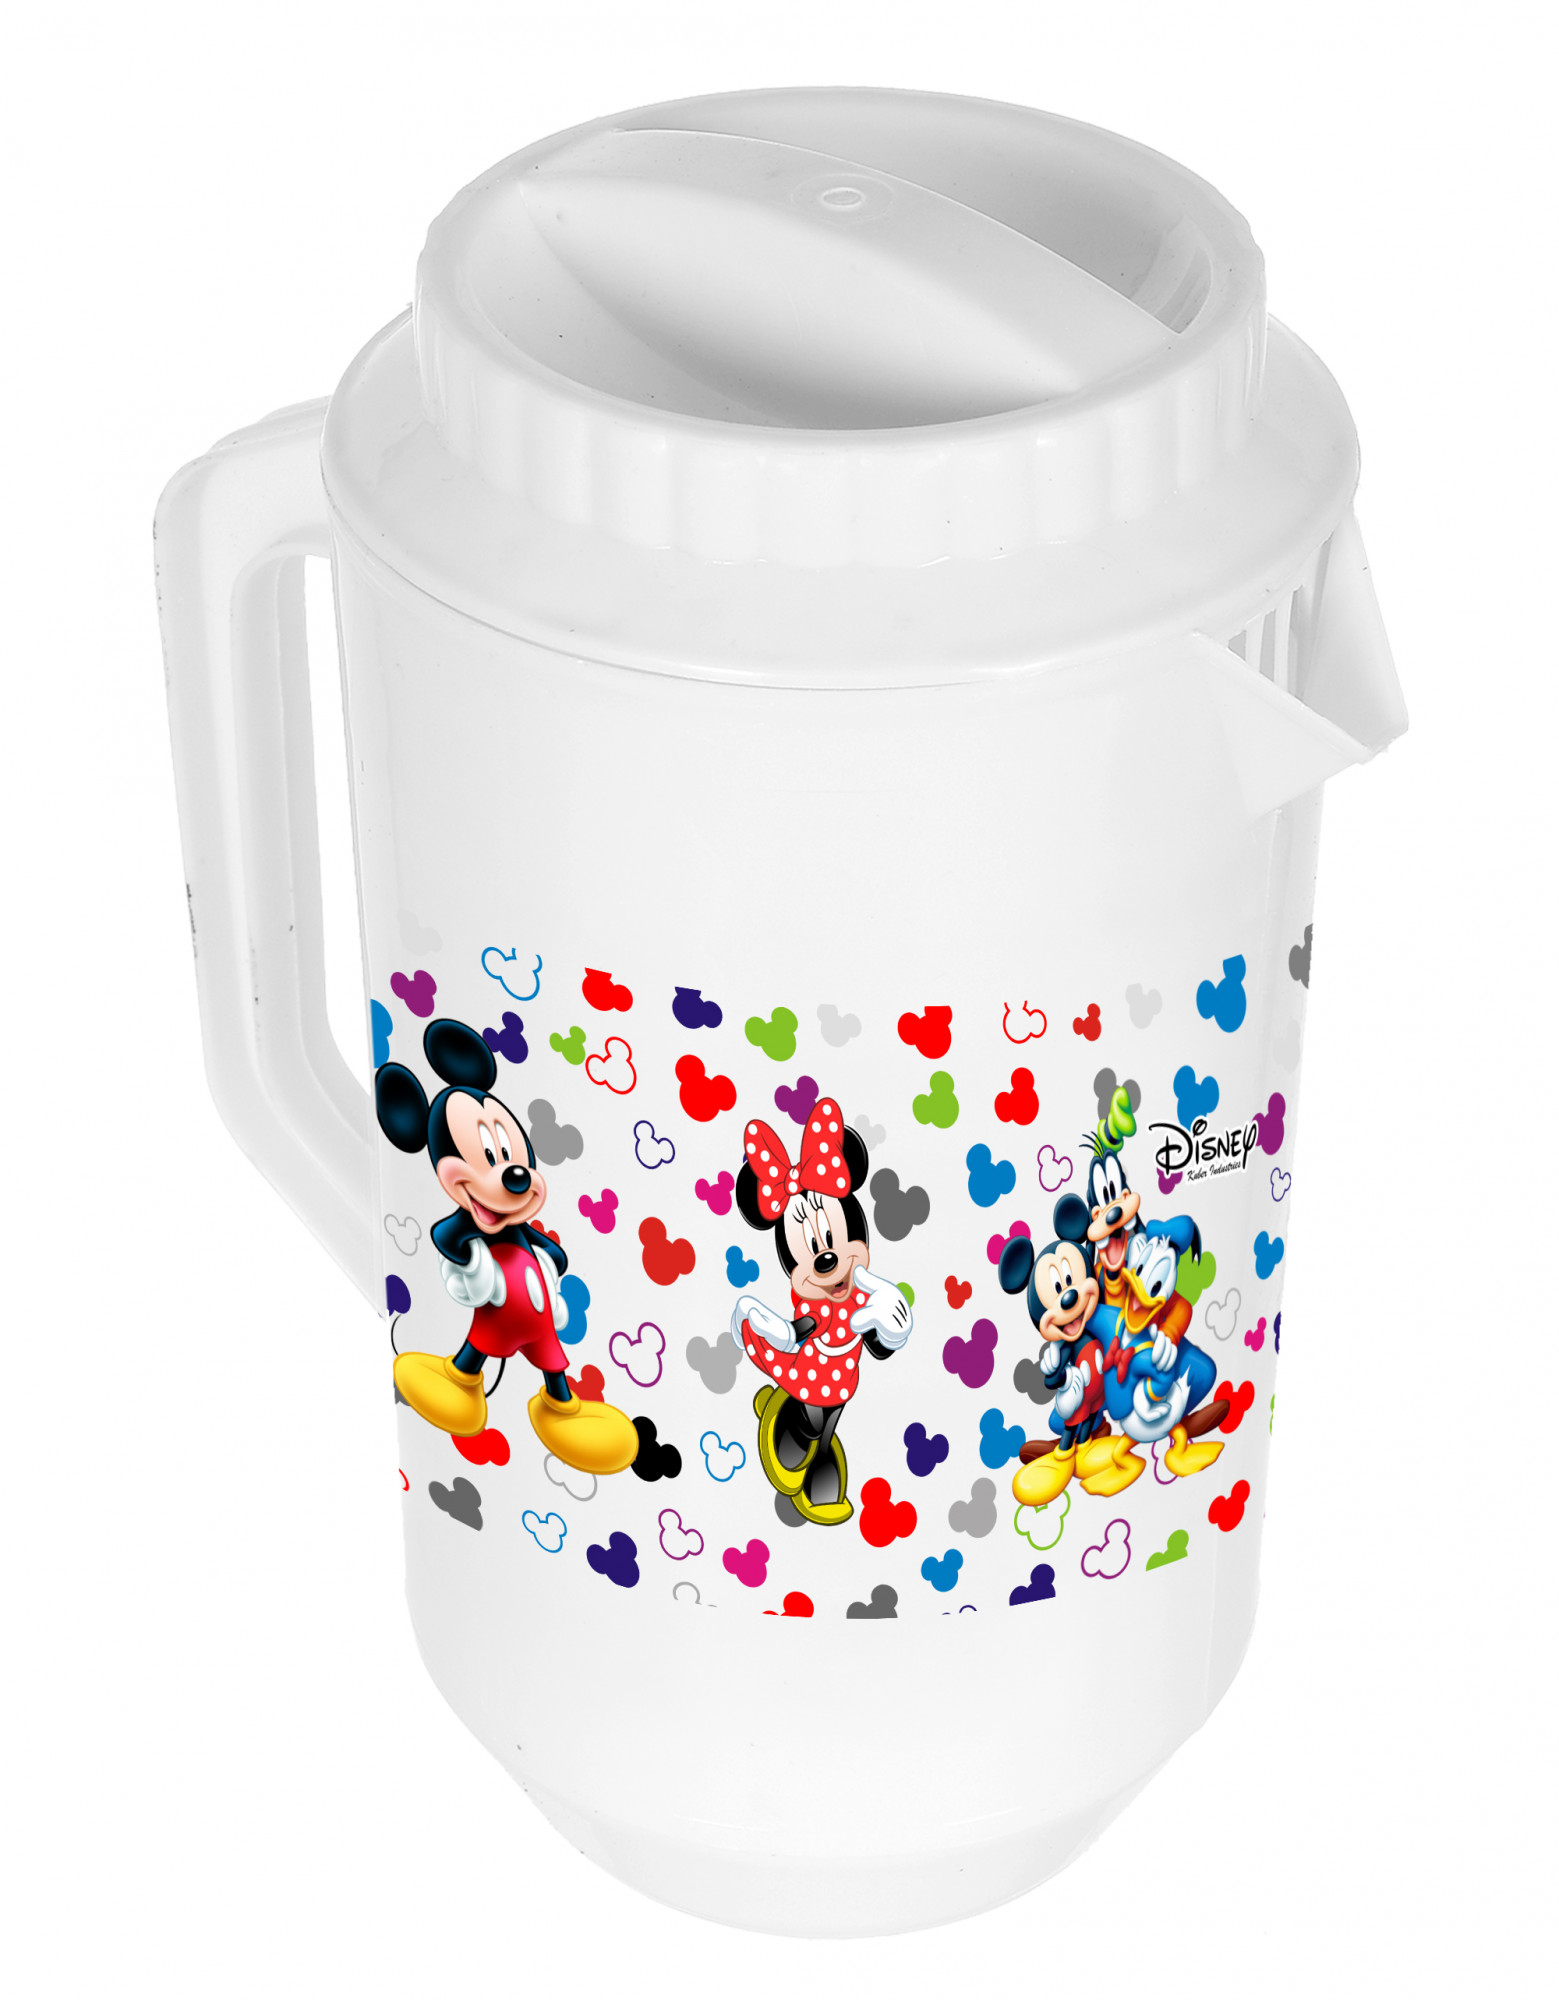 Kuber Industries Disney Team Mickey Print Unbreakable Multipurpose Plastic Water & Juice Jug With Lid,2 Ltr (White)